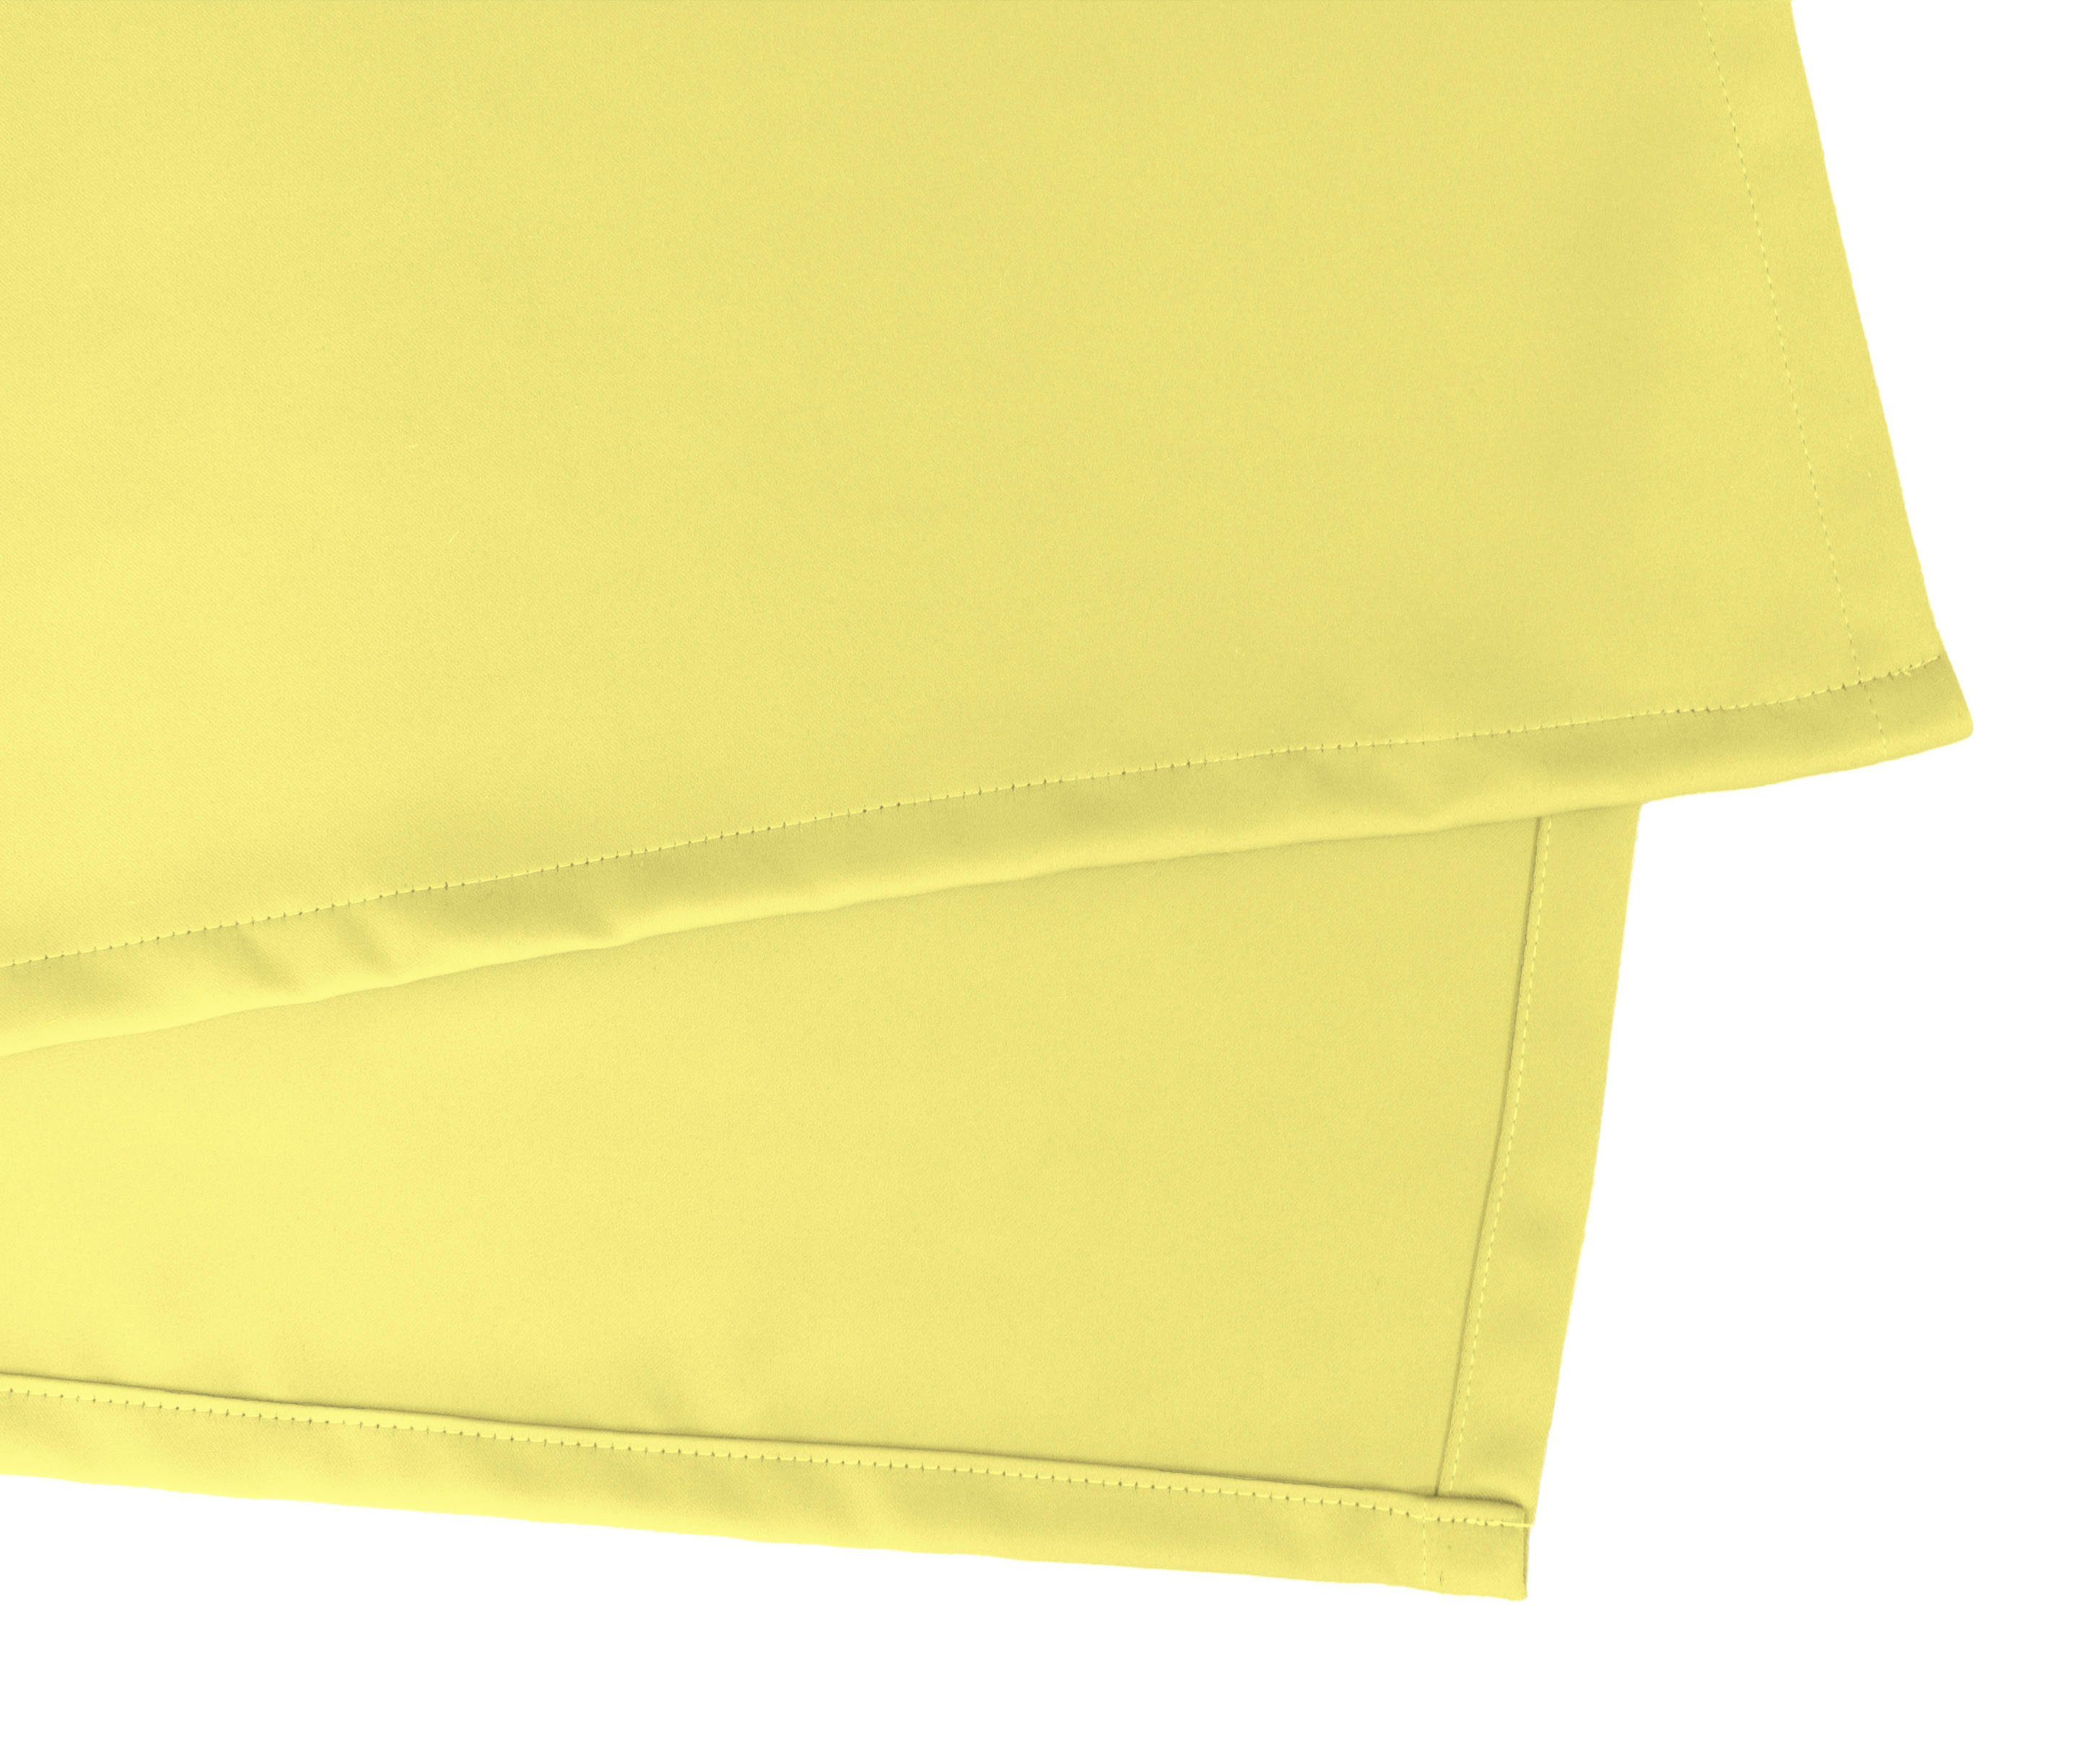 Vorhang Leon, Verdunkler, (1 Energie gelbgrün Kräuselband verdunkelnd, sparend,Wärmeschutz,blickdicht,verschiedene VHG, St), Größen